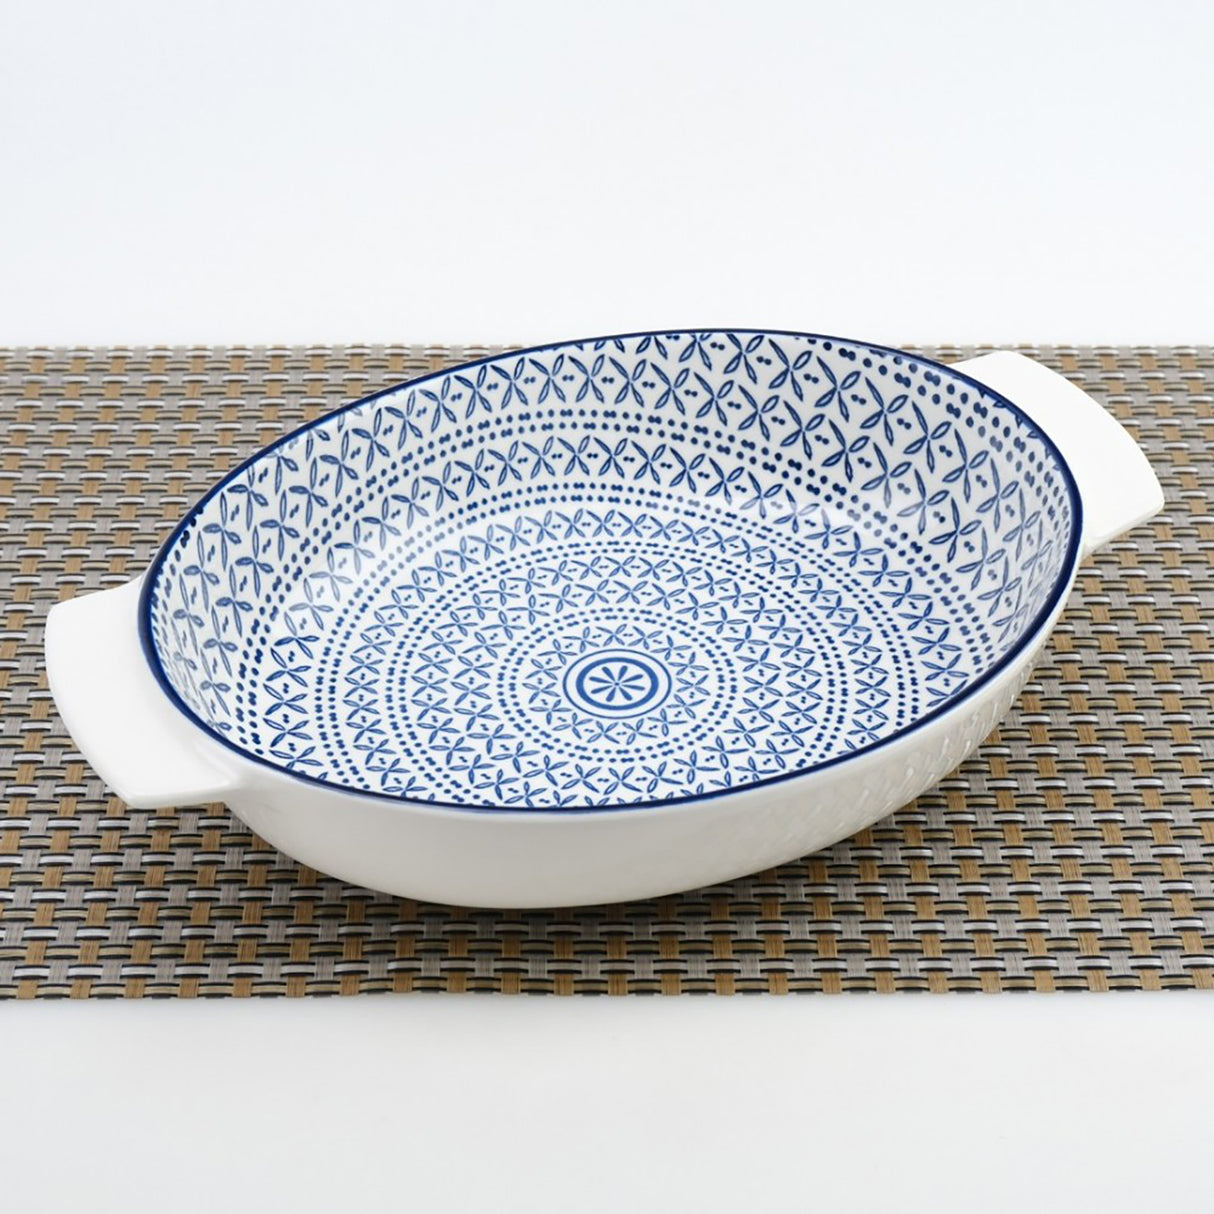 Tava ovala pentru cuptor cu Manere, Ceramica, Albastru-Alb, 32x21x6,5 cm